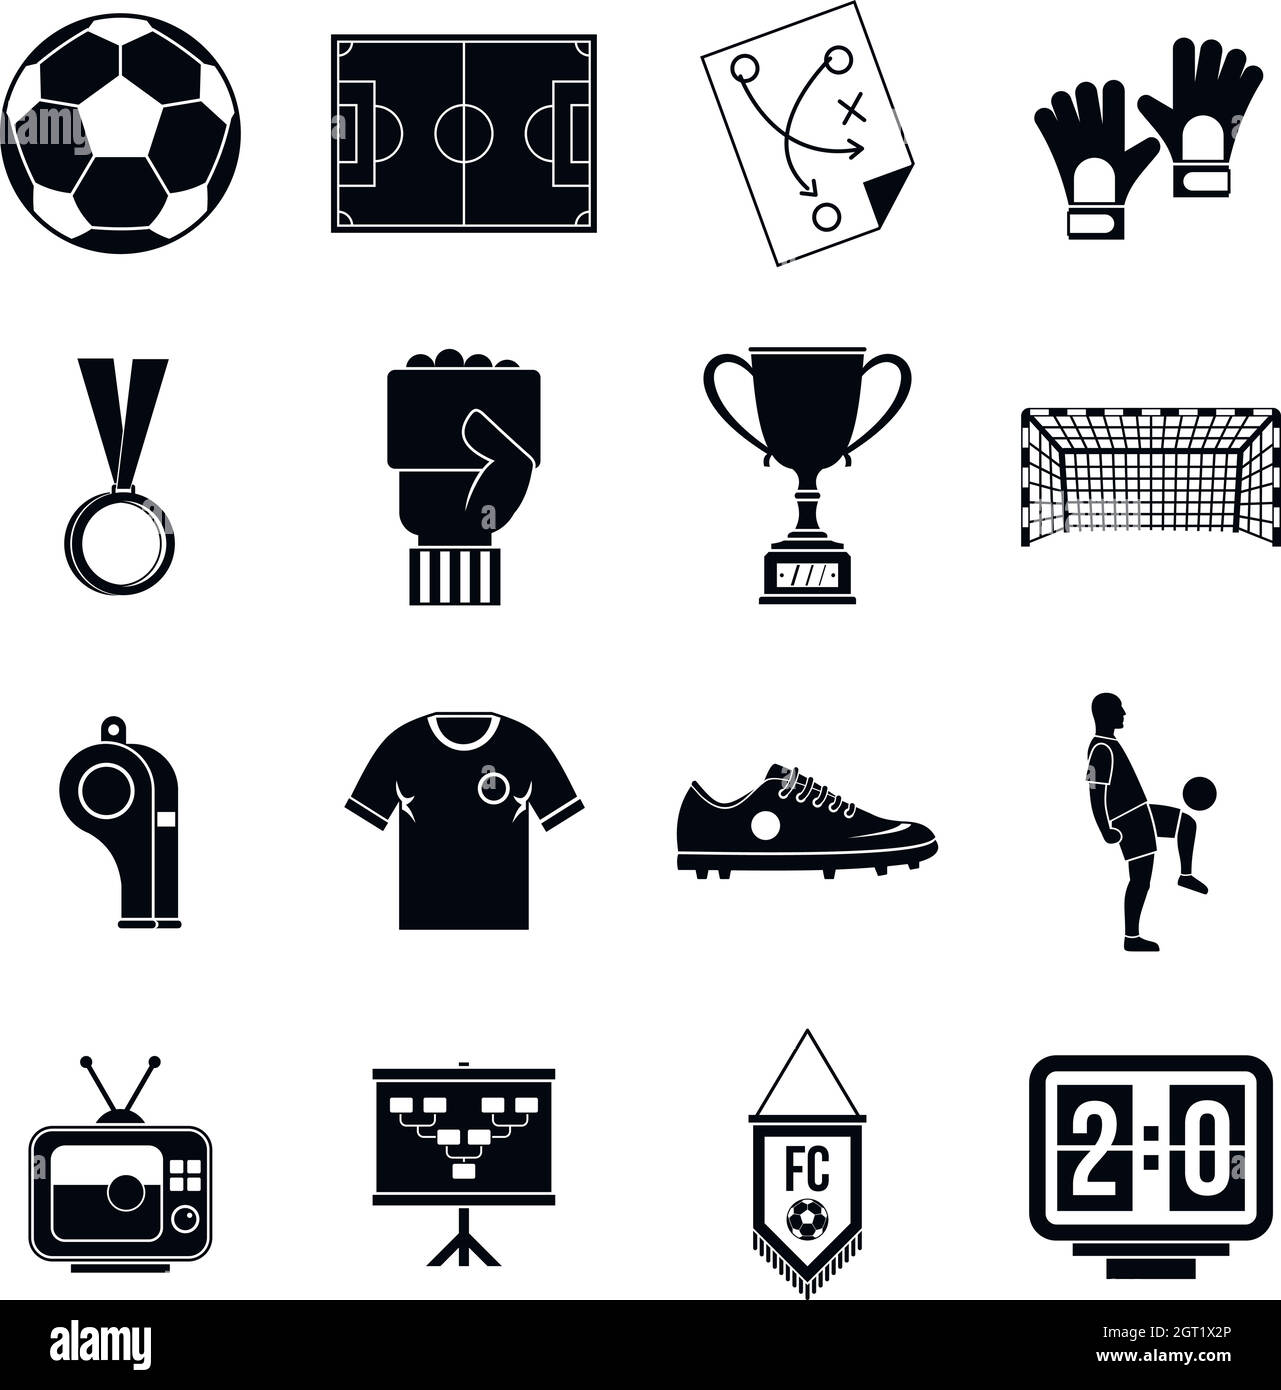 Football Soccer icons set, le style simple Illustration de Vecteur